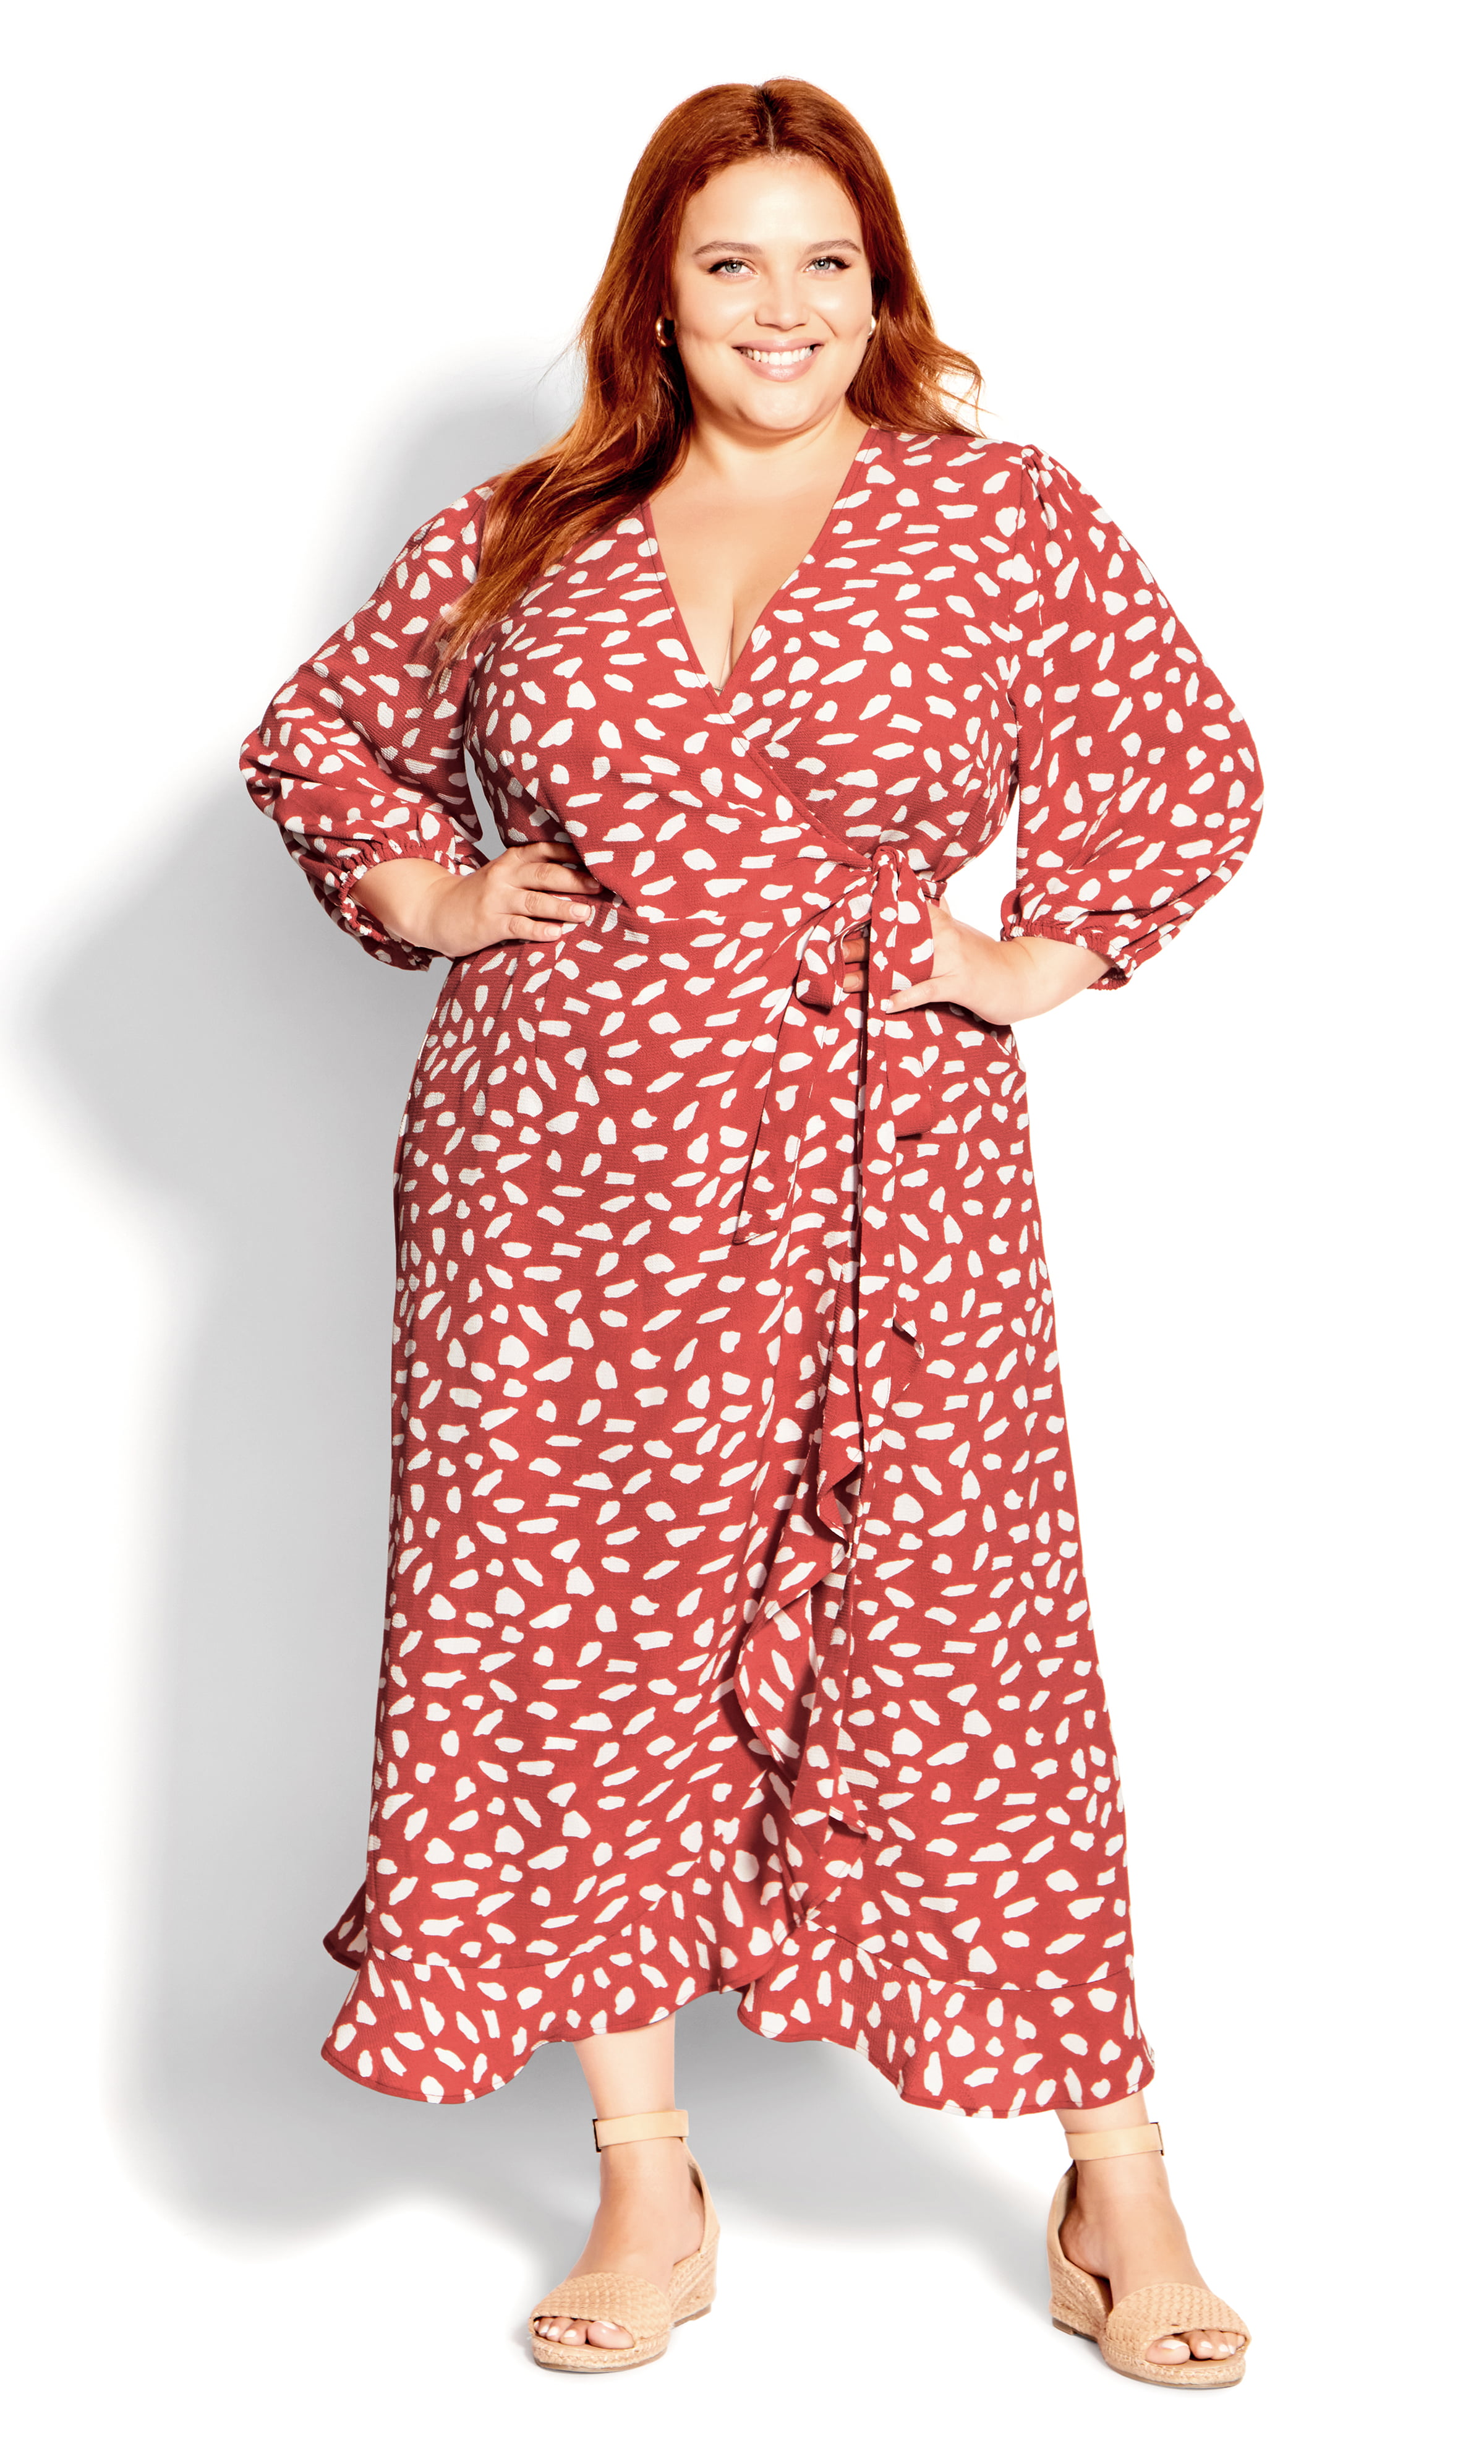 Kyst eskortere indendørs Evans Women's Plus Size Molly Wrap 3/4 Sleeves V-Neckline Dress -  Walmart.com